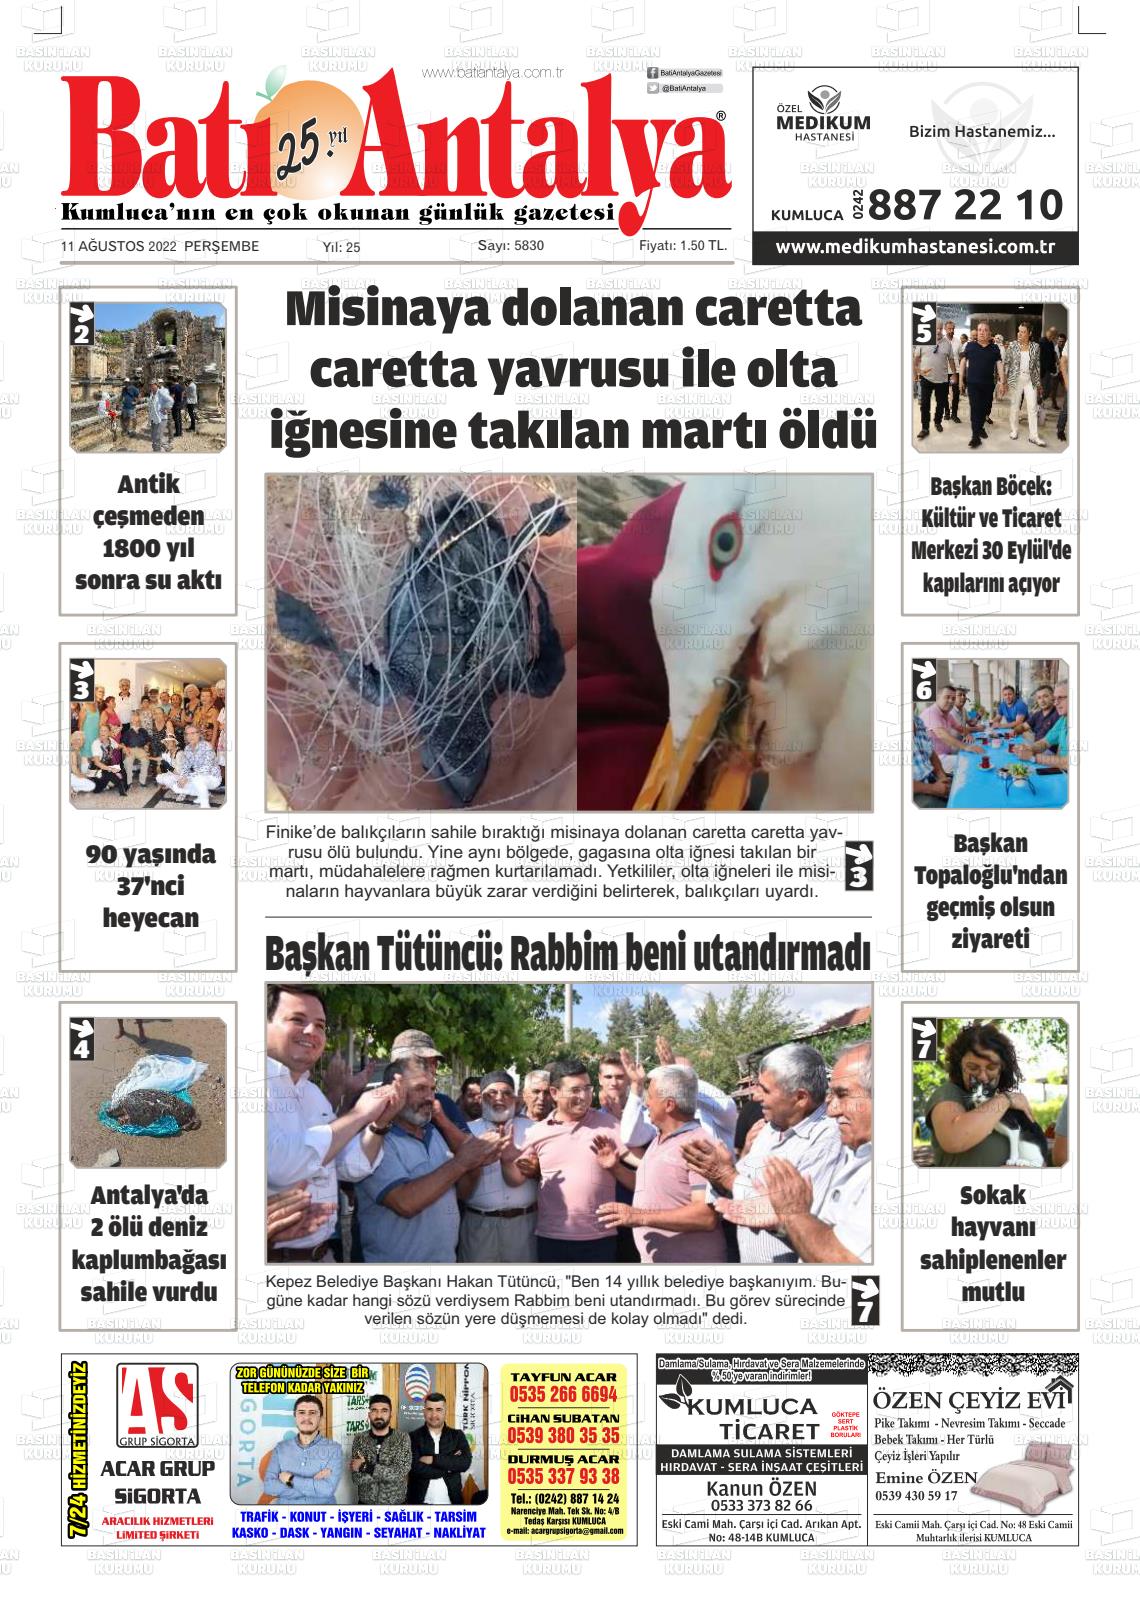 11 Ağustos 2022 Batı Antalya Gazete Manşeti